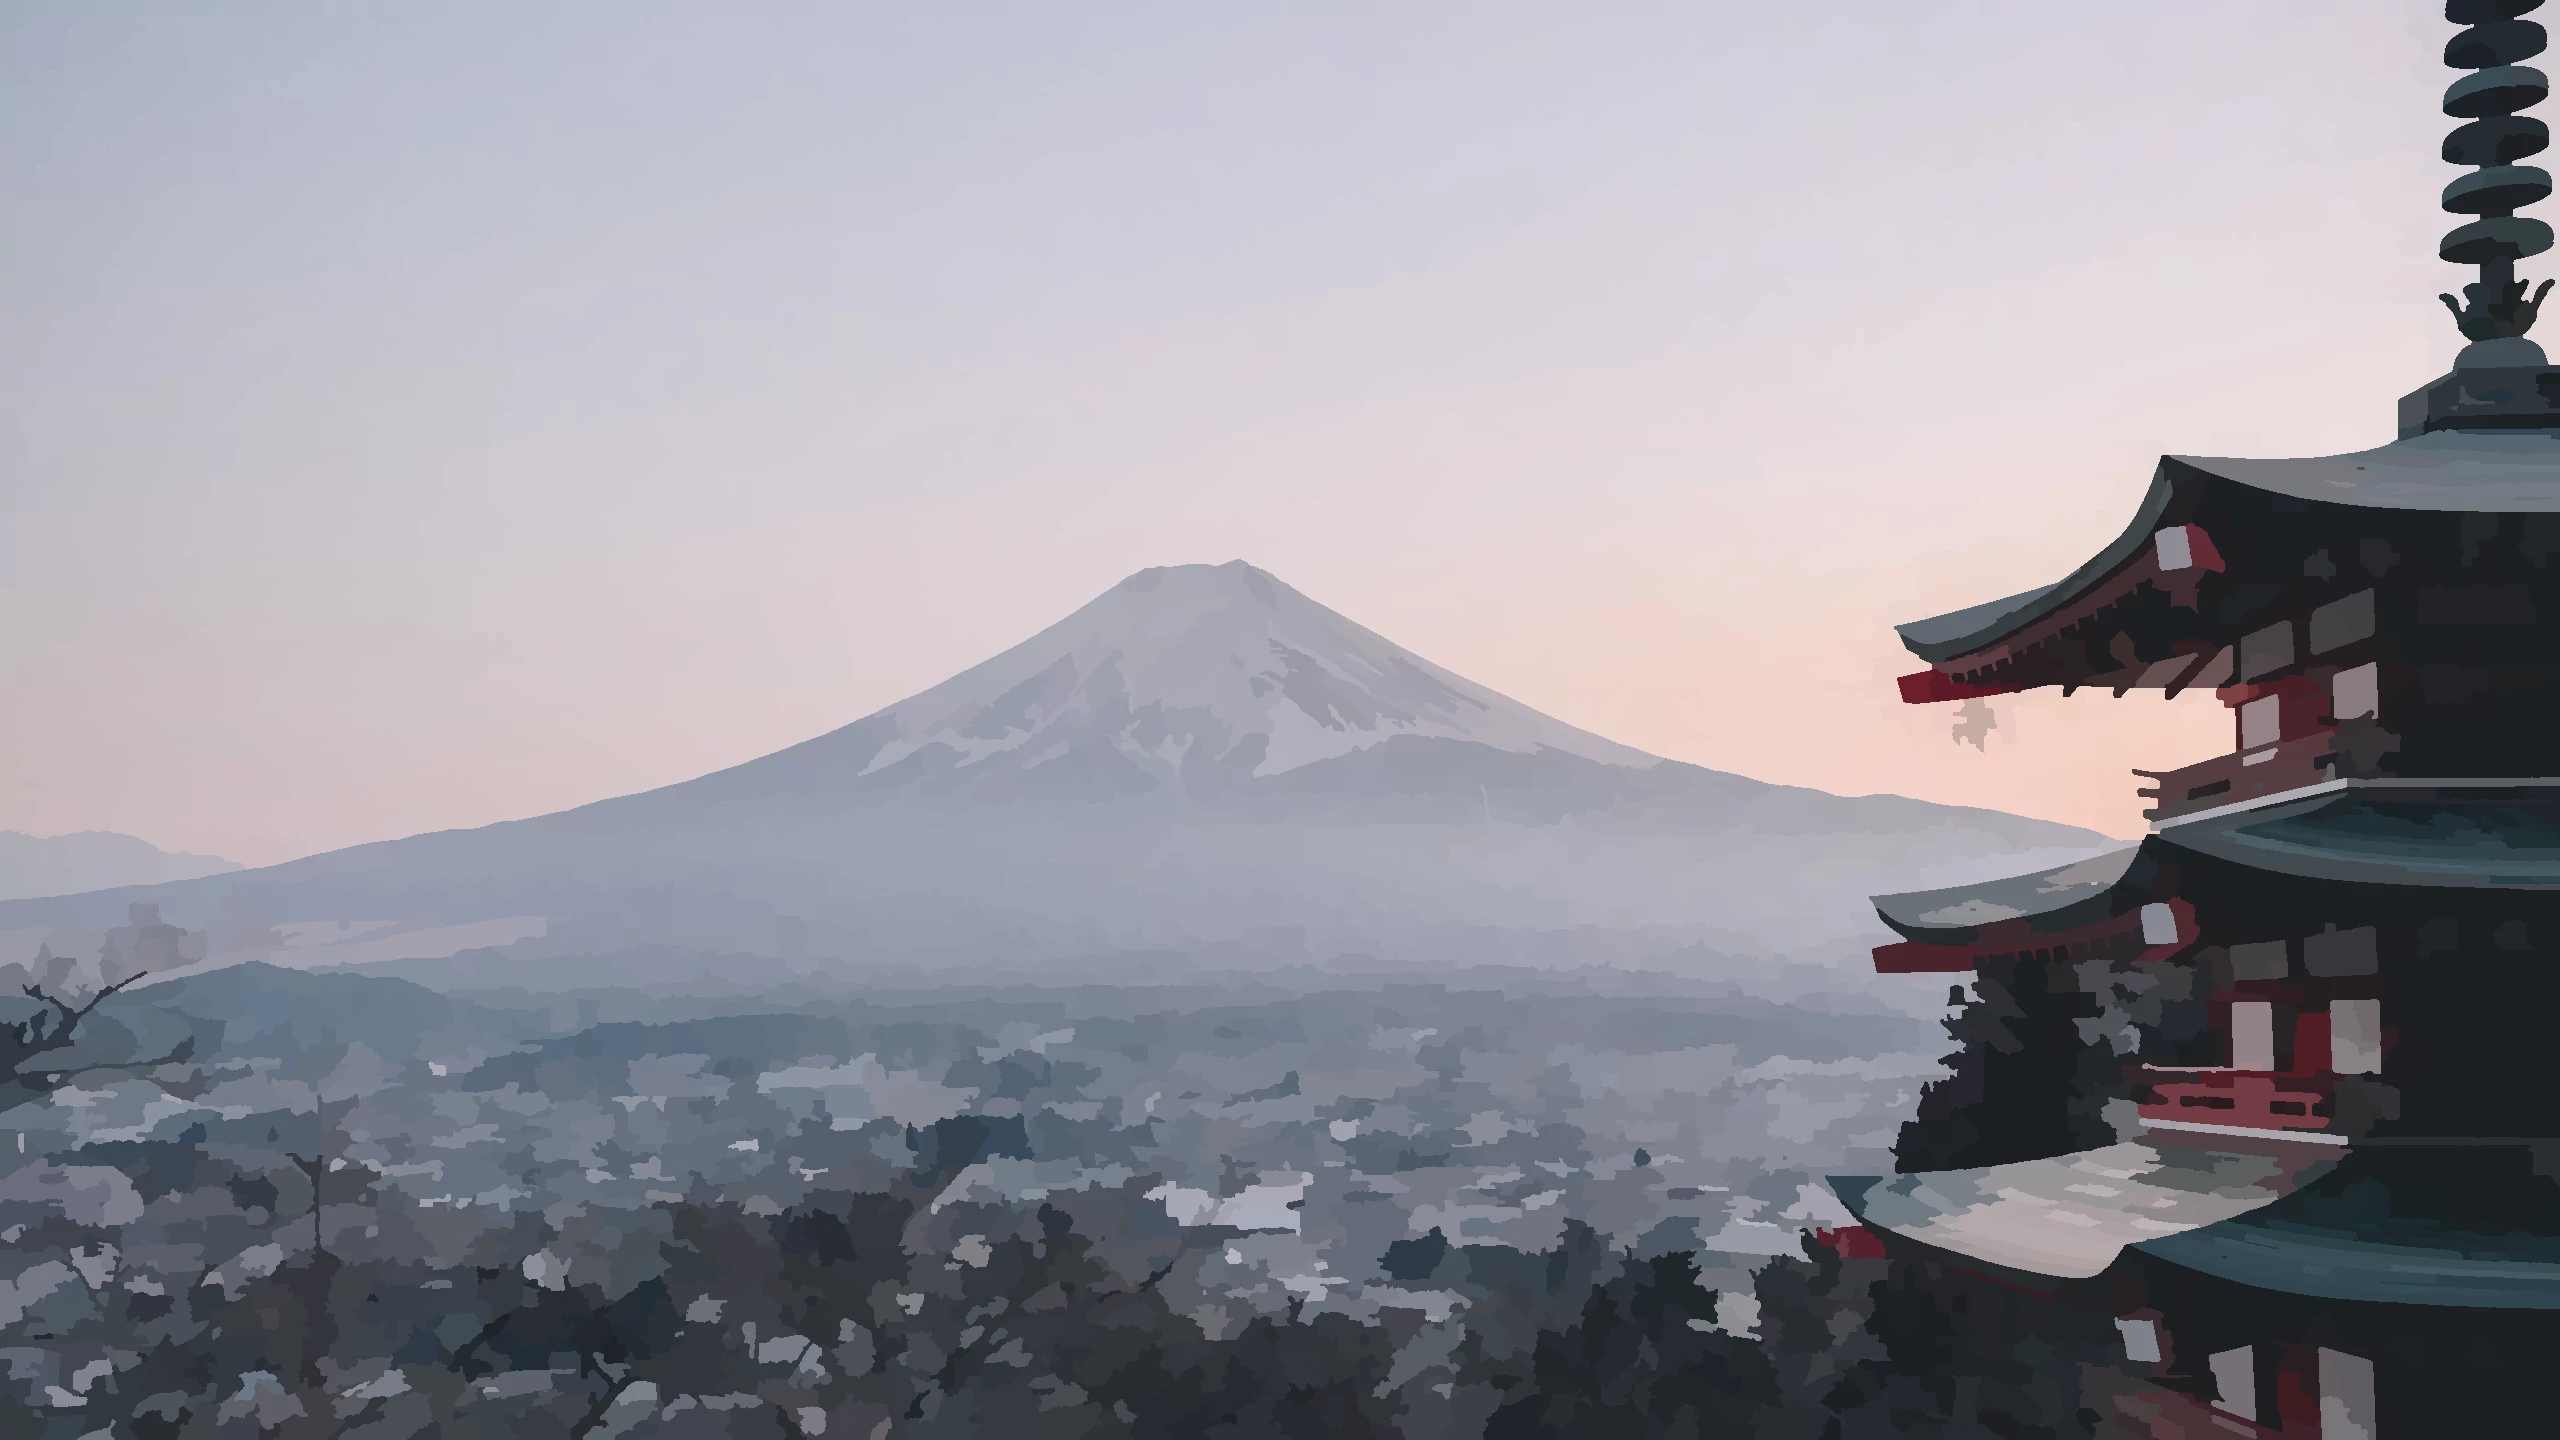 Imagen editada del monte Fuji. Original hecho por Manuel Cosentino.